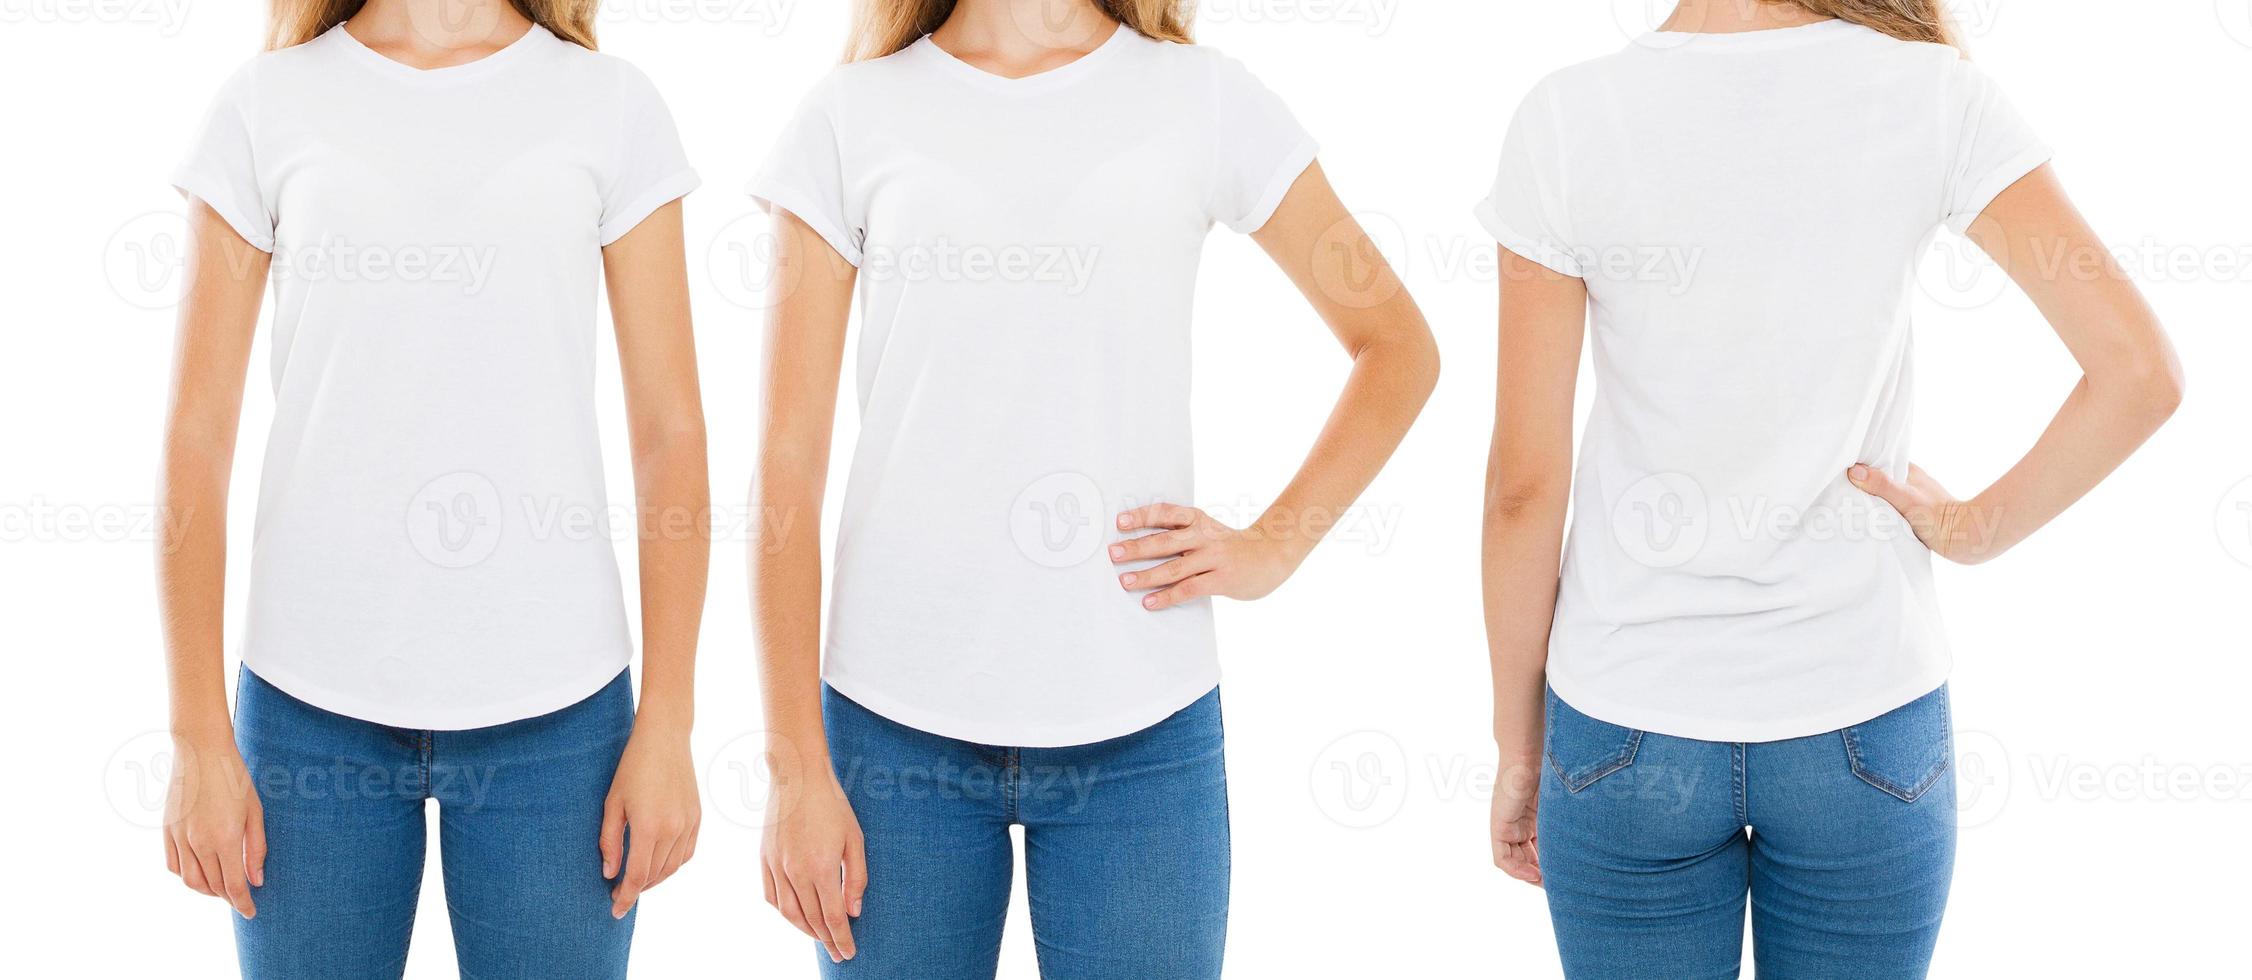 t-shirt donna isolata su sfondo bianco, set t-shirt, collage tshirt, ritratto ritagliato foto